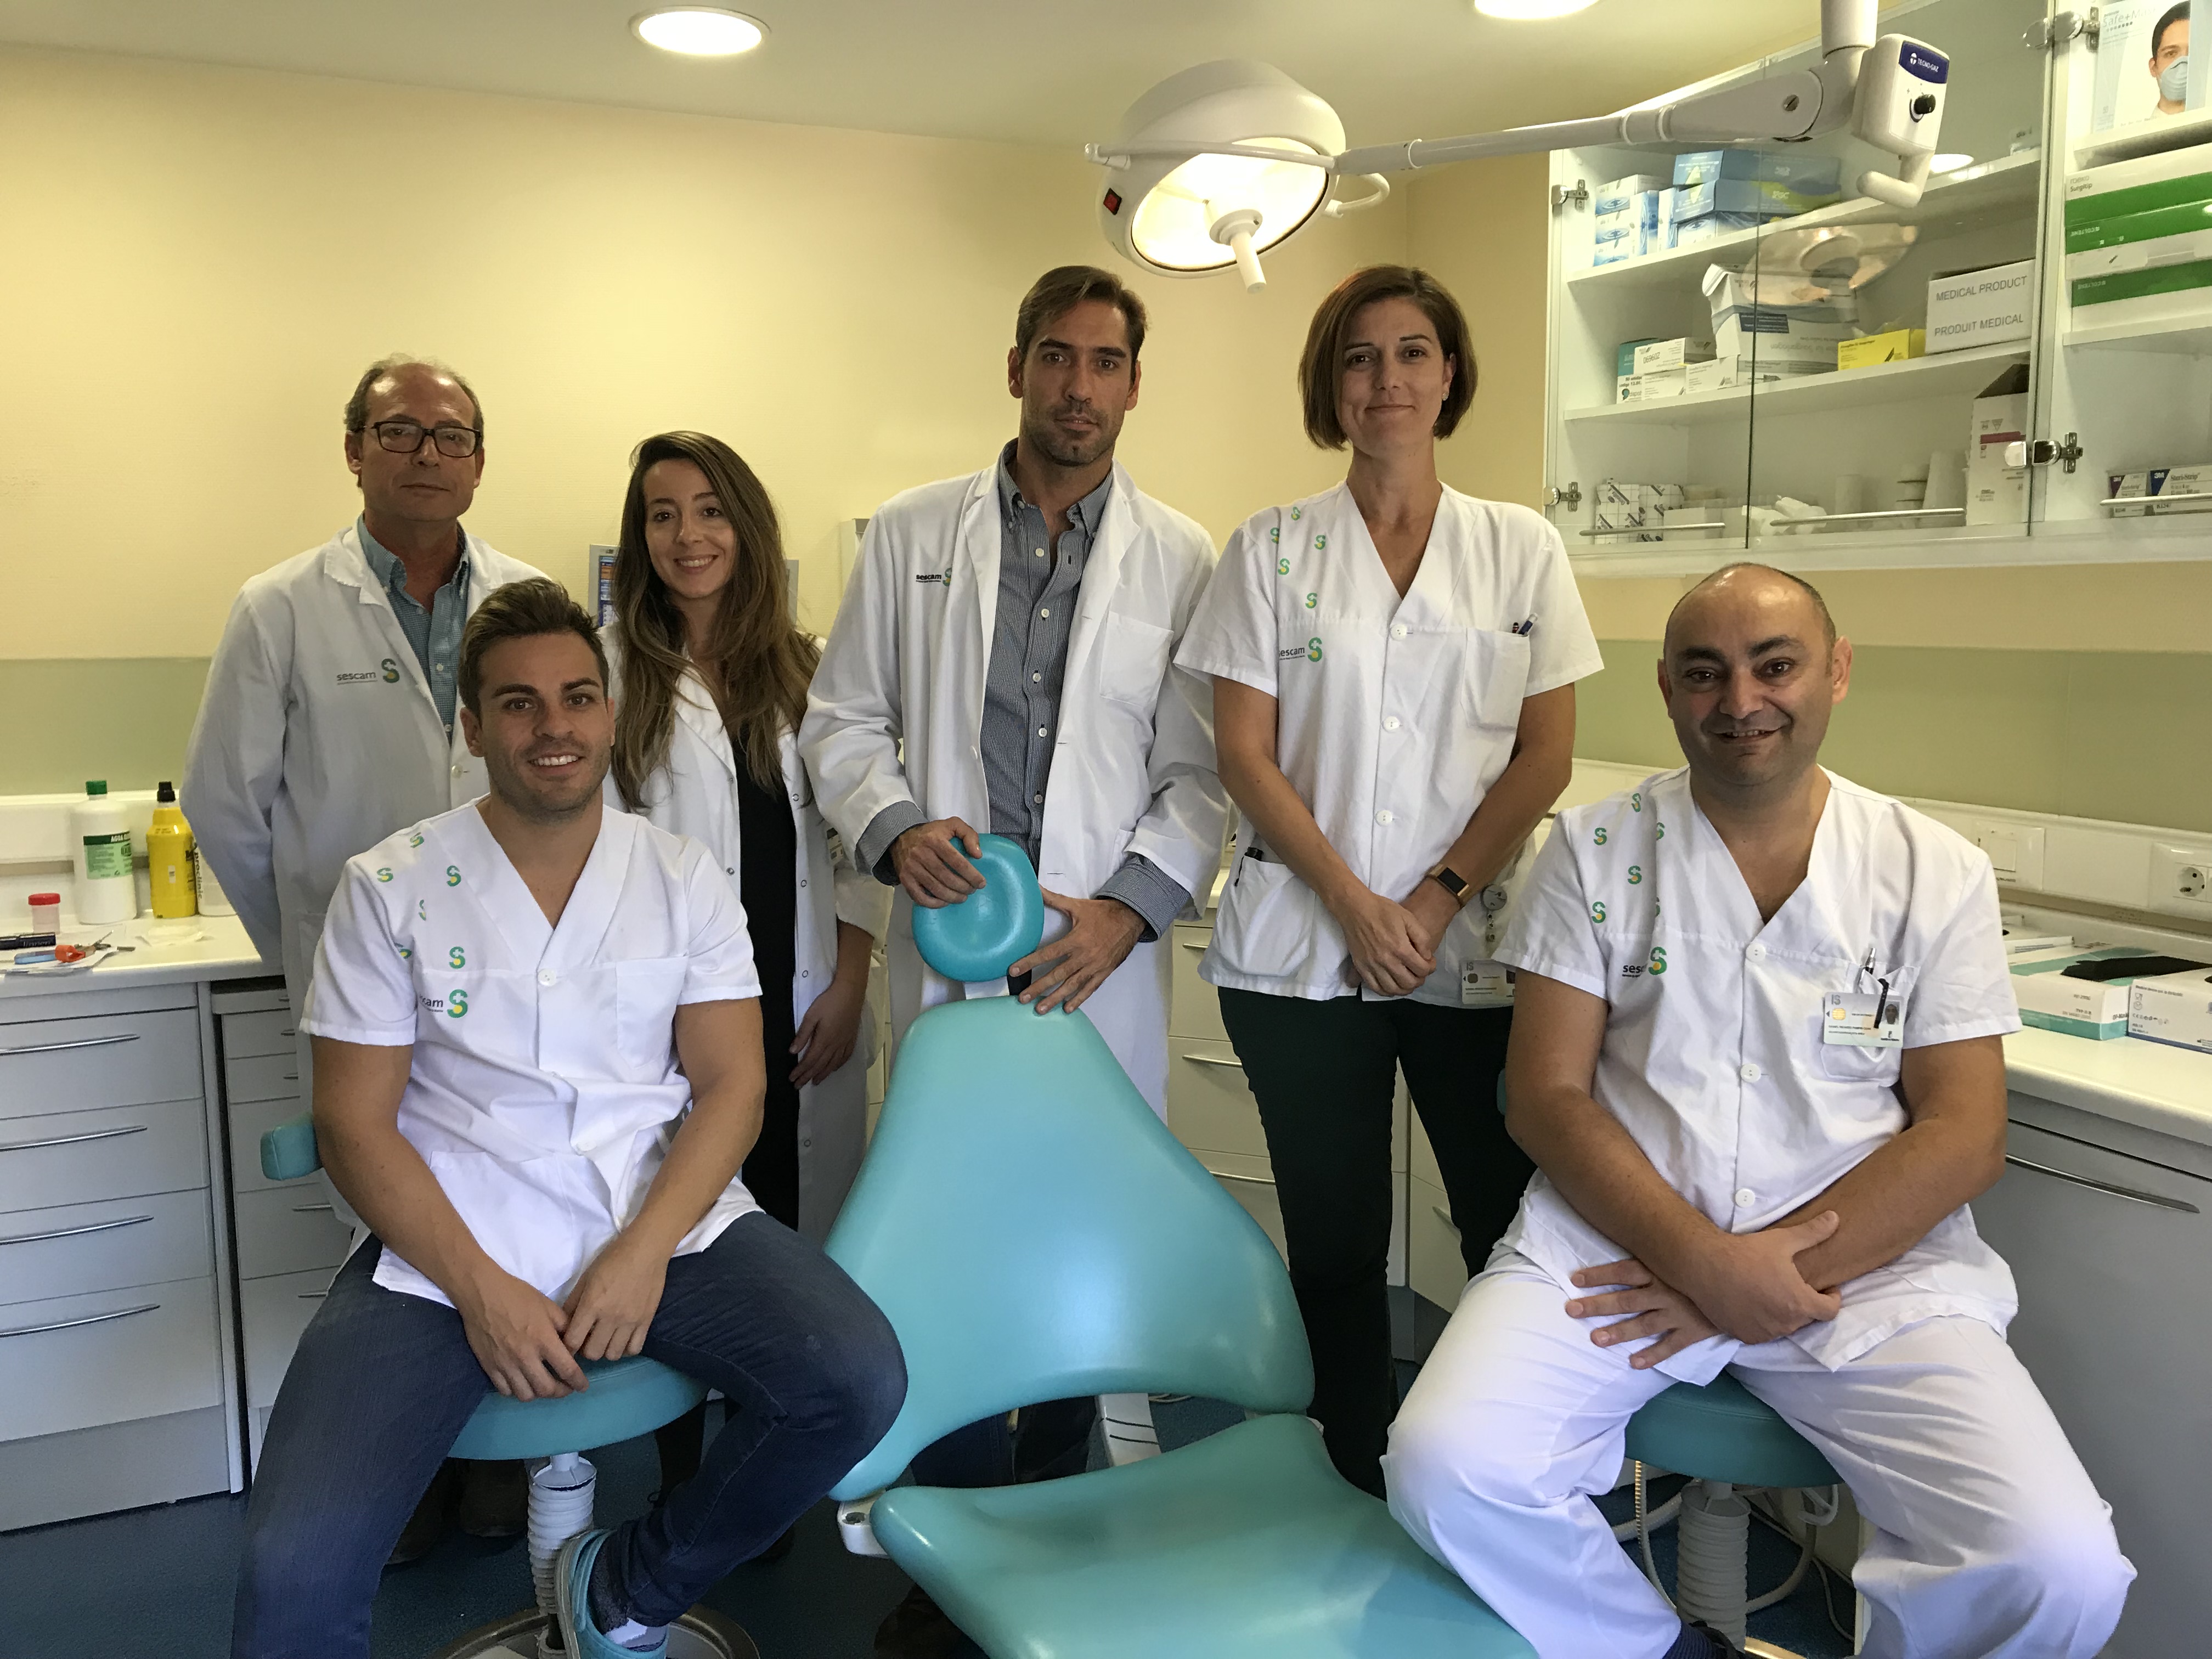 Cirujanos maxilofaciales de Albacete realizan una reconstrucción maxilar completa utilizando réplicas físicas en tres dimensiones de la zona afectada y la zona donante